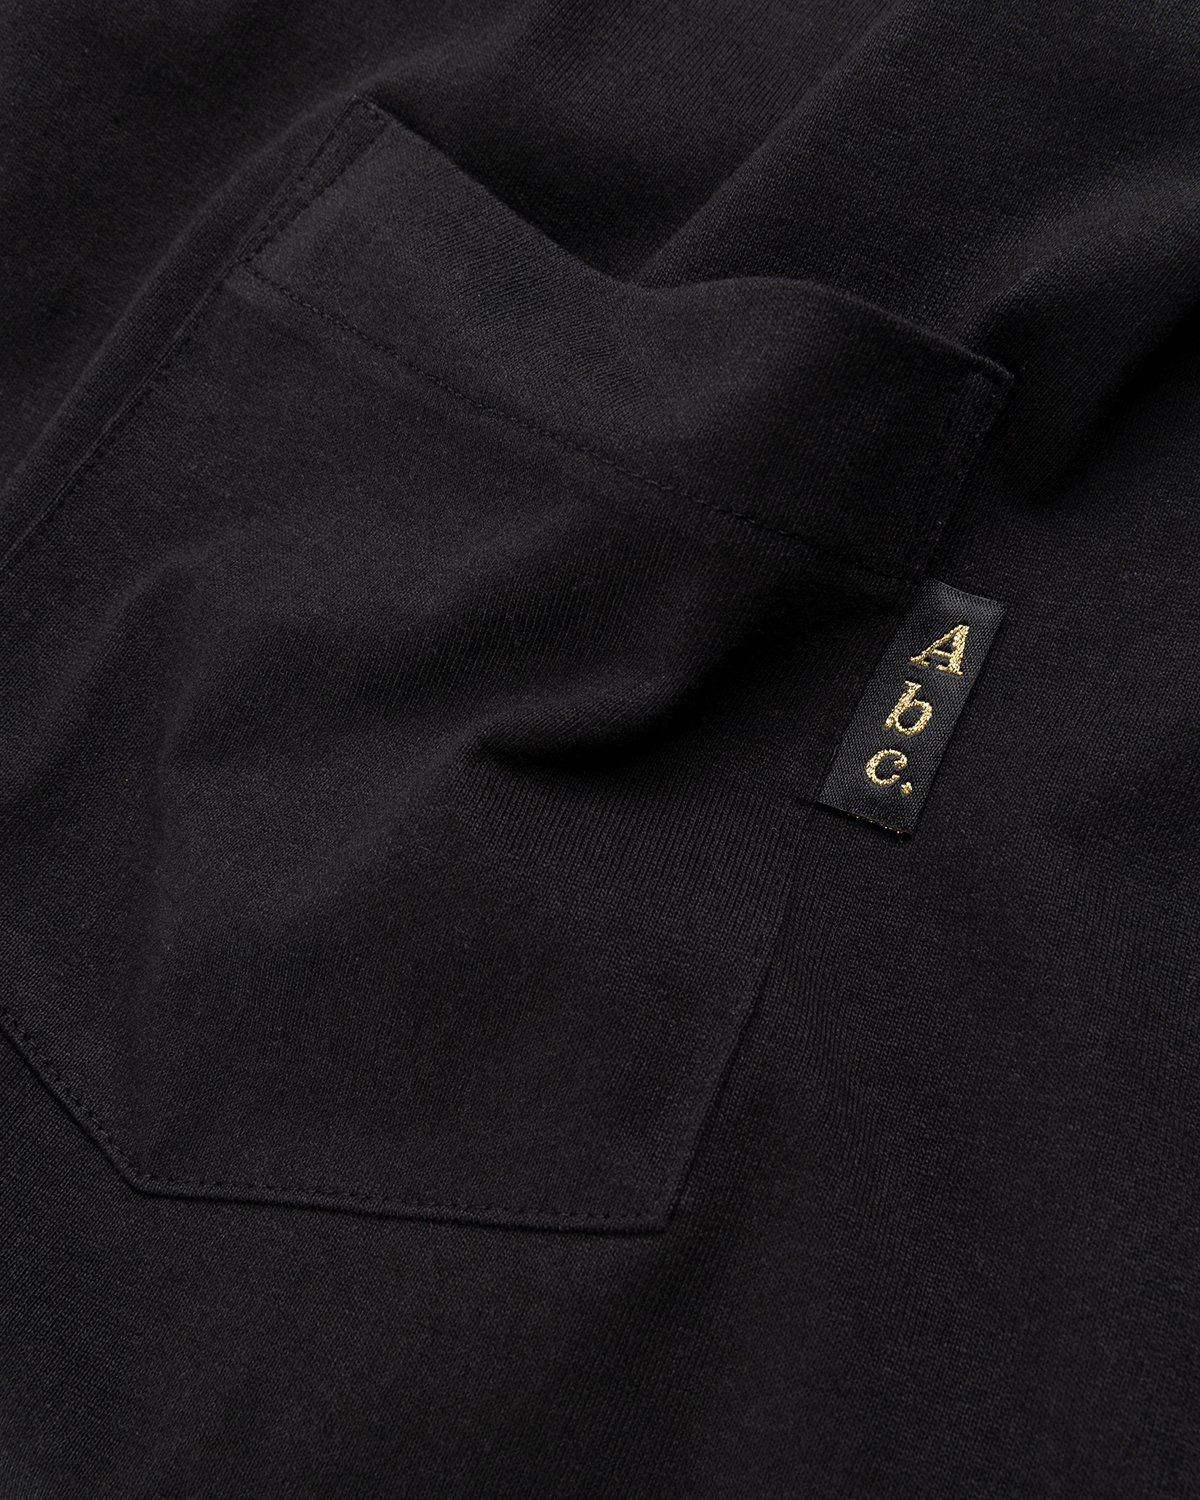 Abc. - Short-Sleeve Pocket Tee Anthracite - Clothing - Black - Image 4